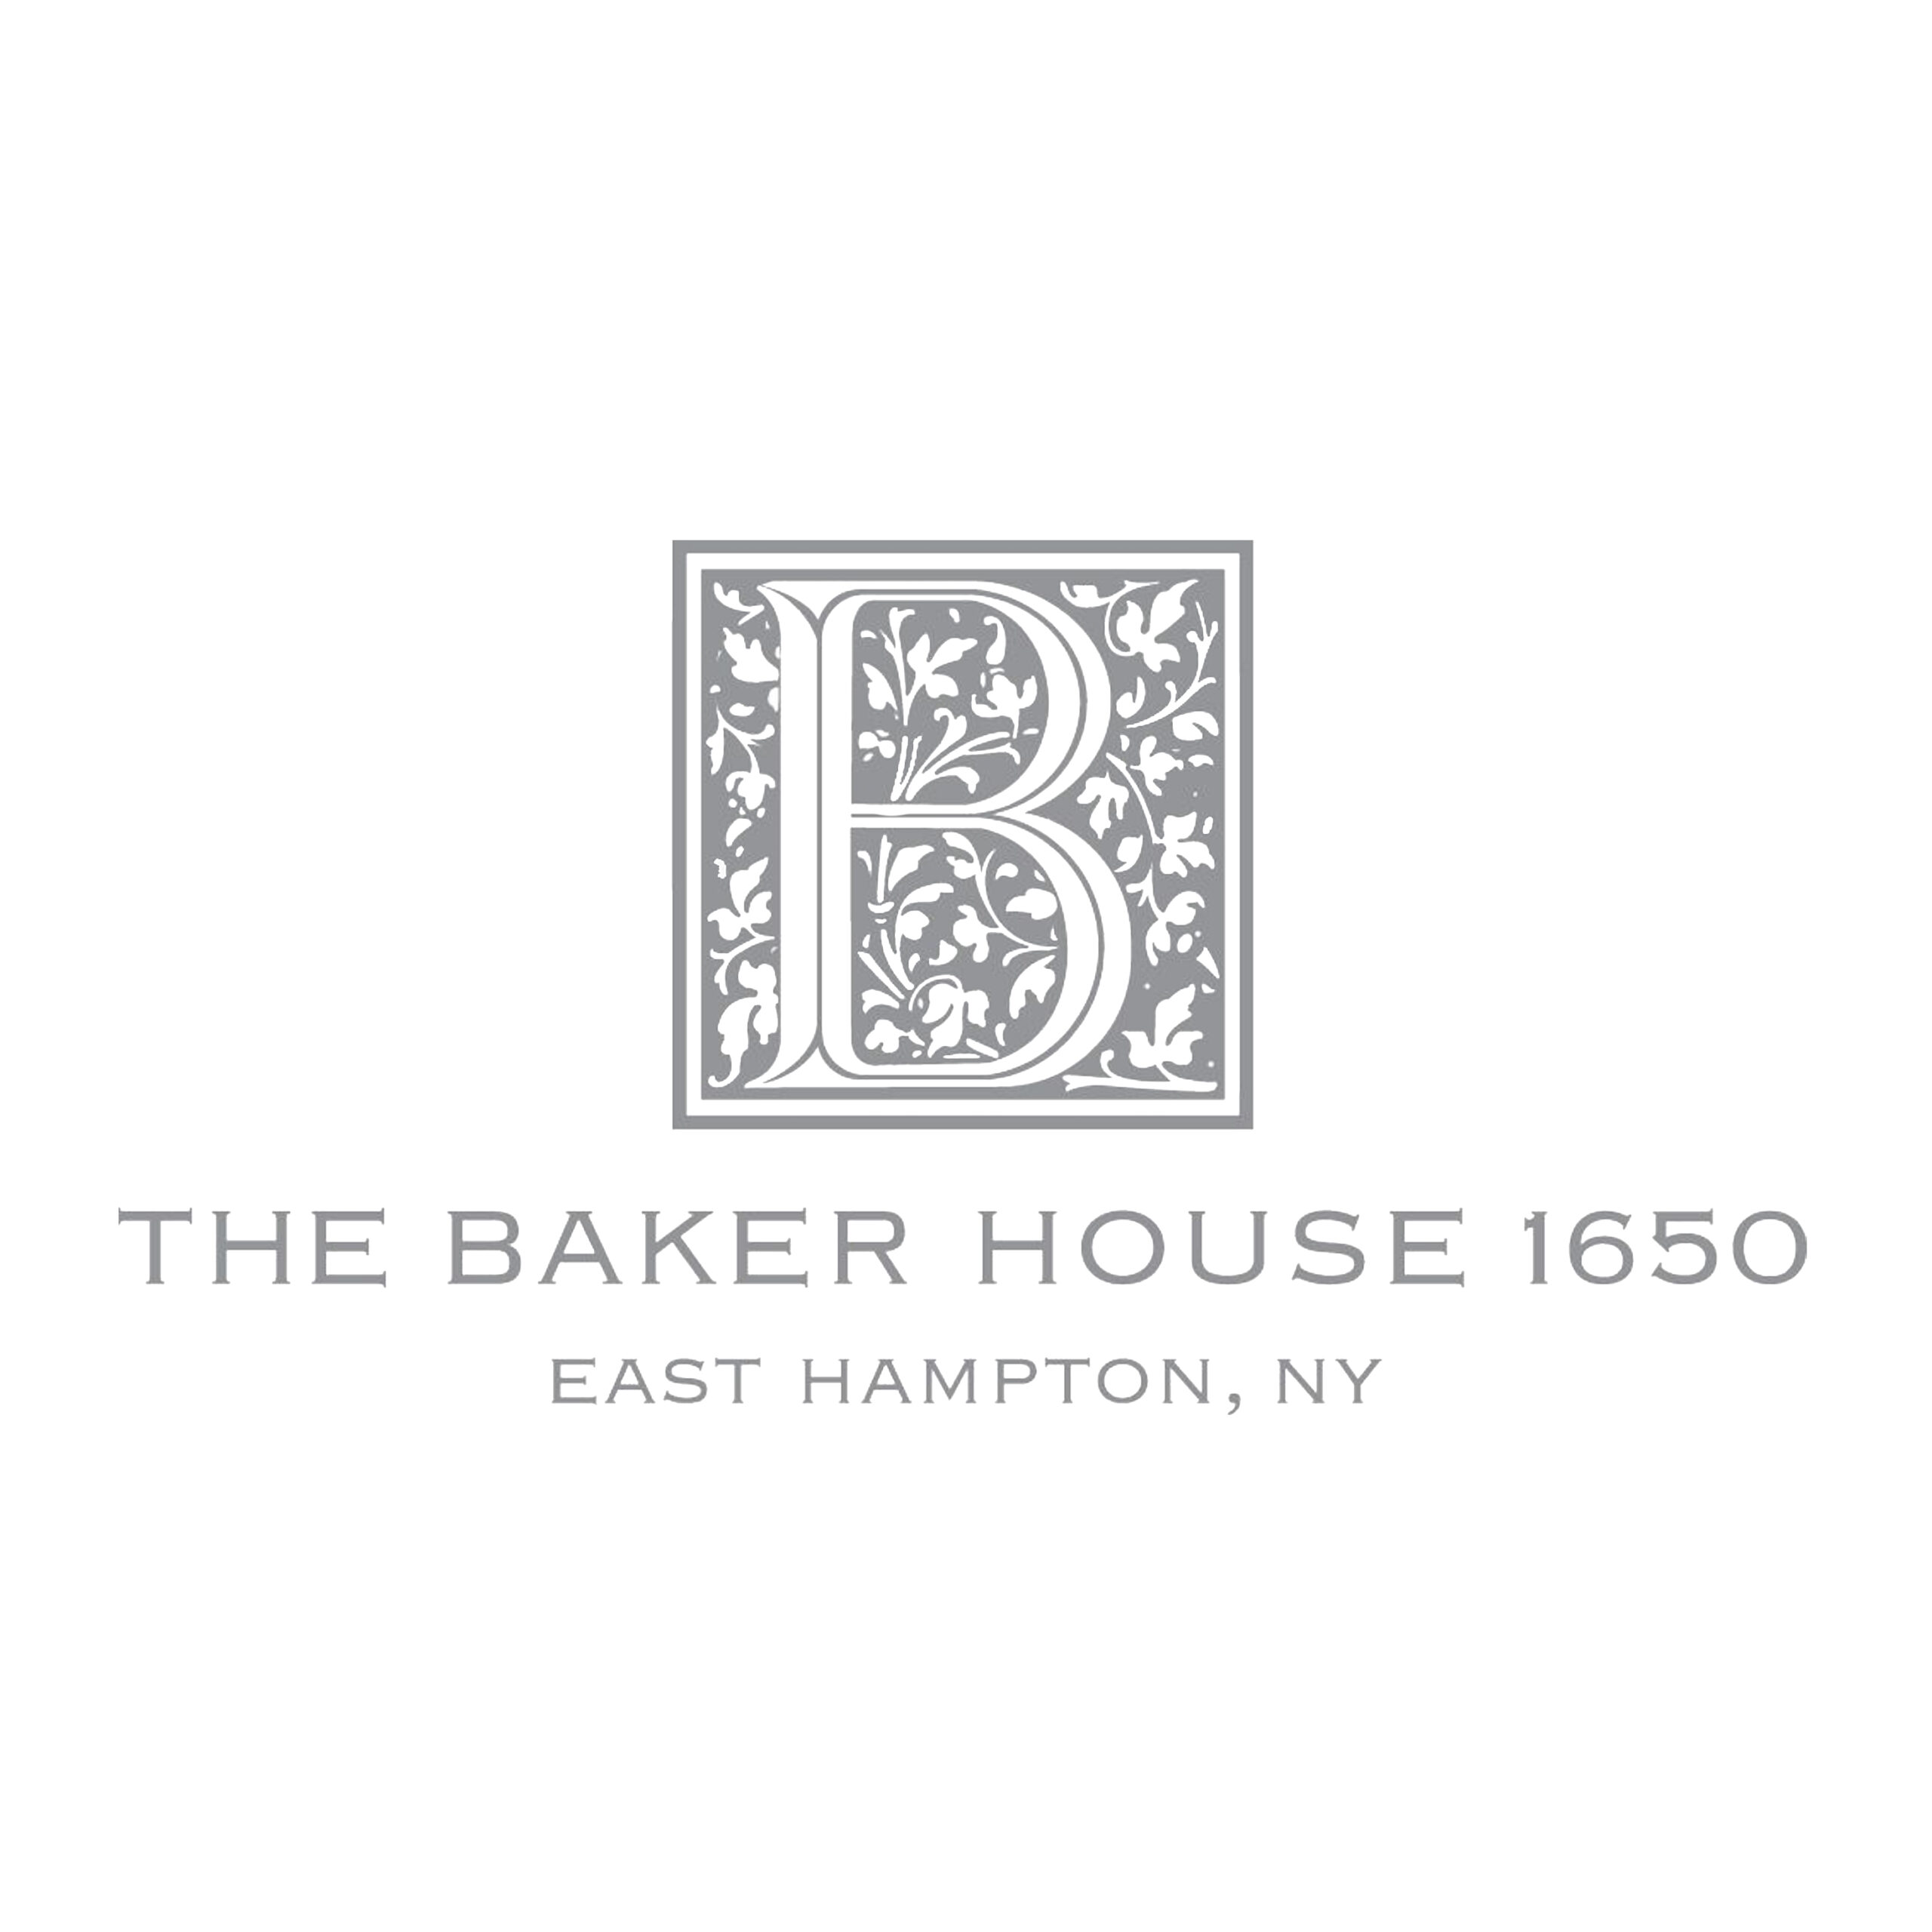 The Baker House 1650